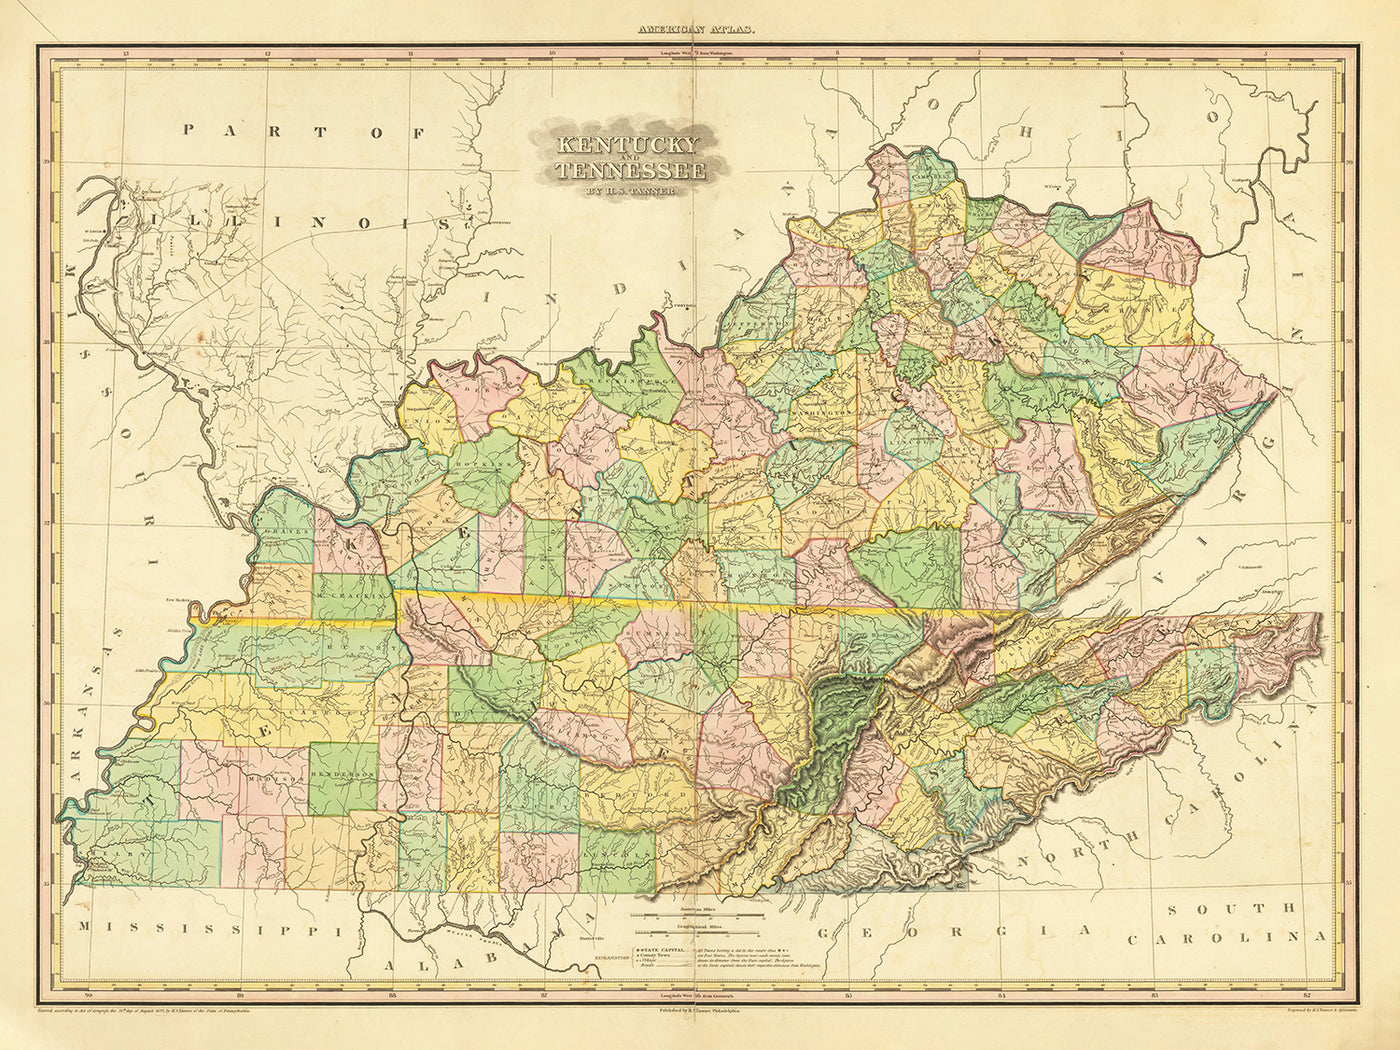 Mapa antiguo de Kentucky y Tennessee por H.S. Tanner, 1820, con Nashville, Louisville, Lexington, Knoxville y Chattanooga